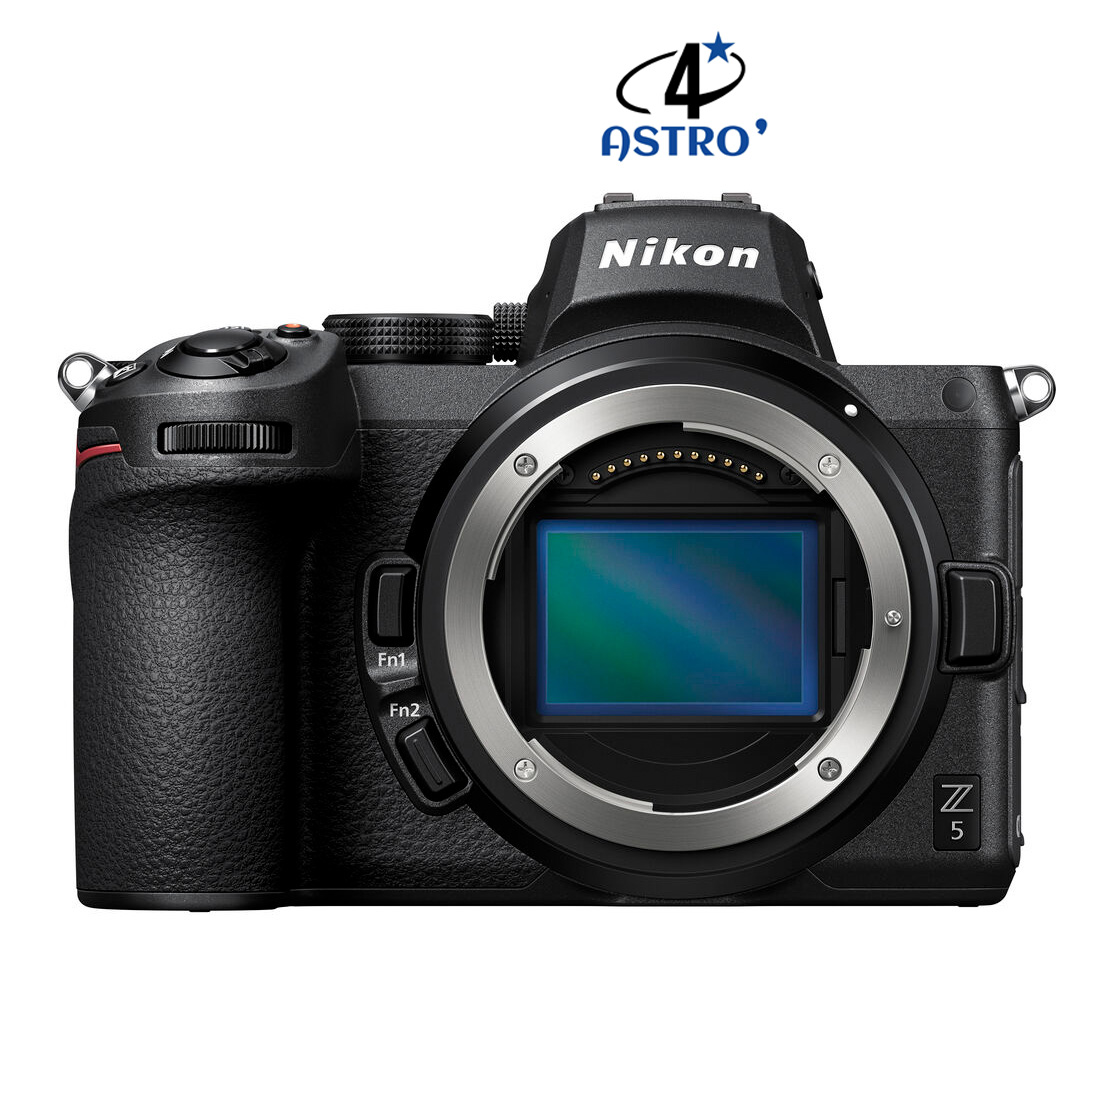 Hybride Nikon Z5 neuf défiltré + refiltré 4'Astro 4'Astro modding